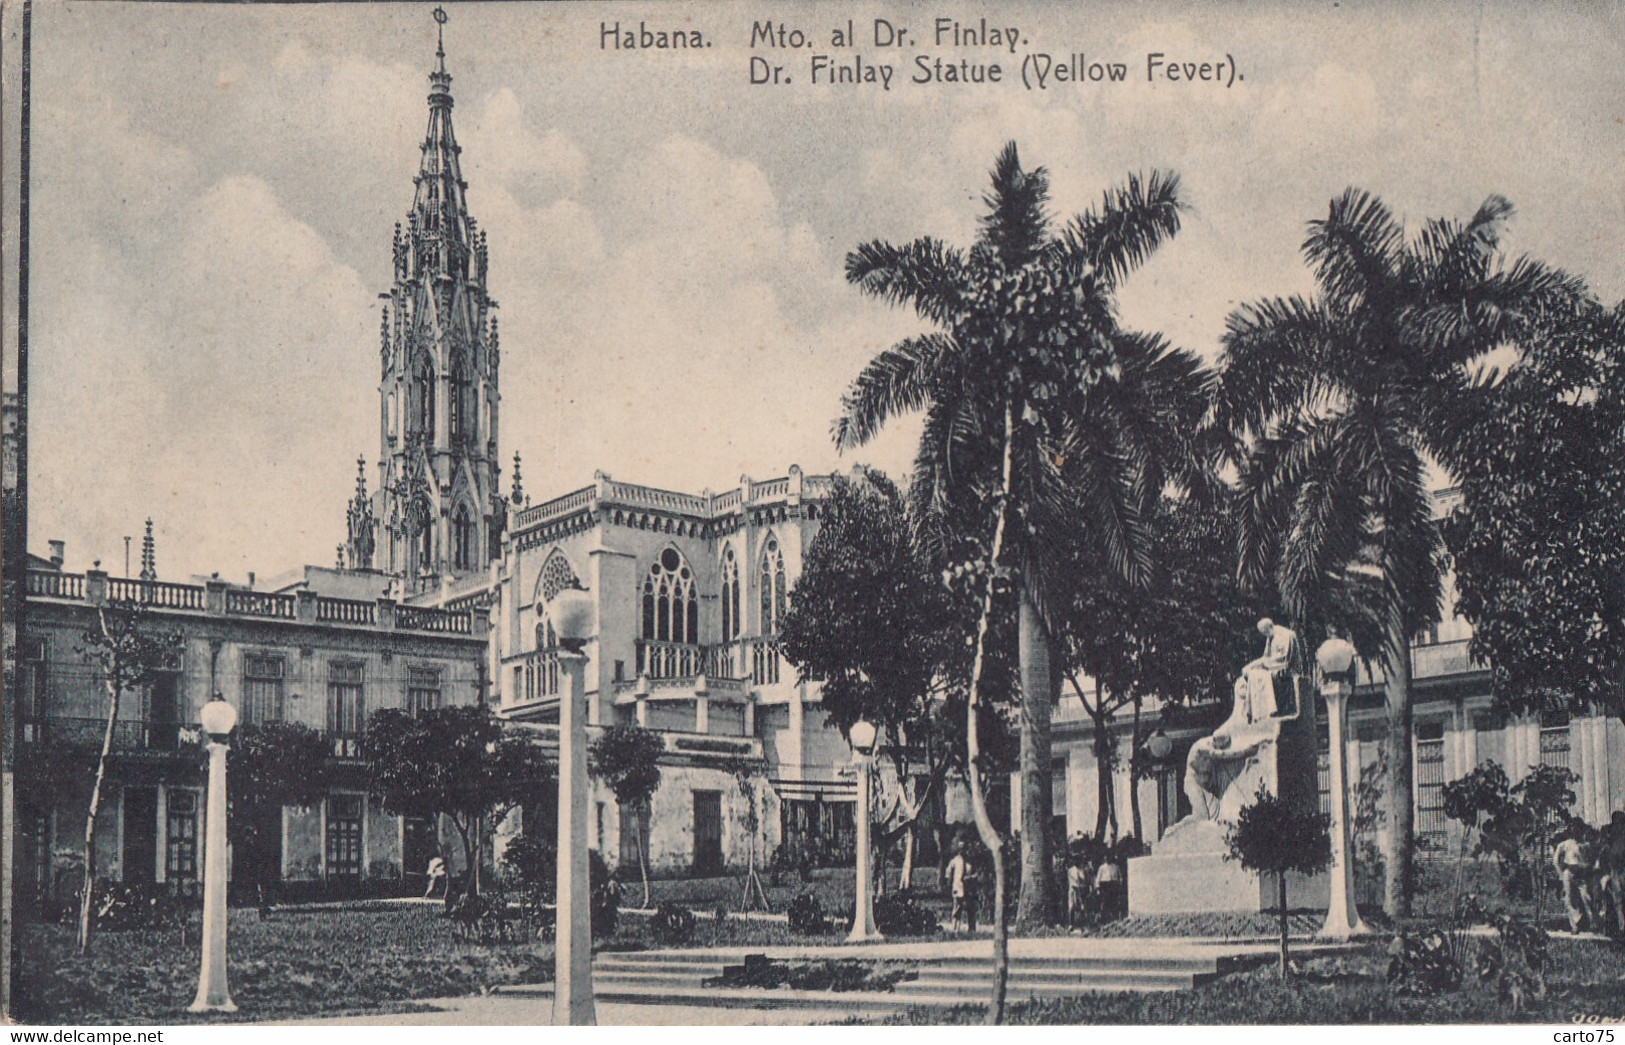 Cuba - Habana - Mto. Al Dr. Finley - Cuba